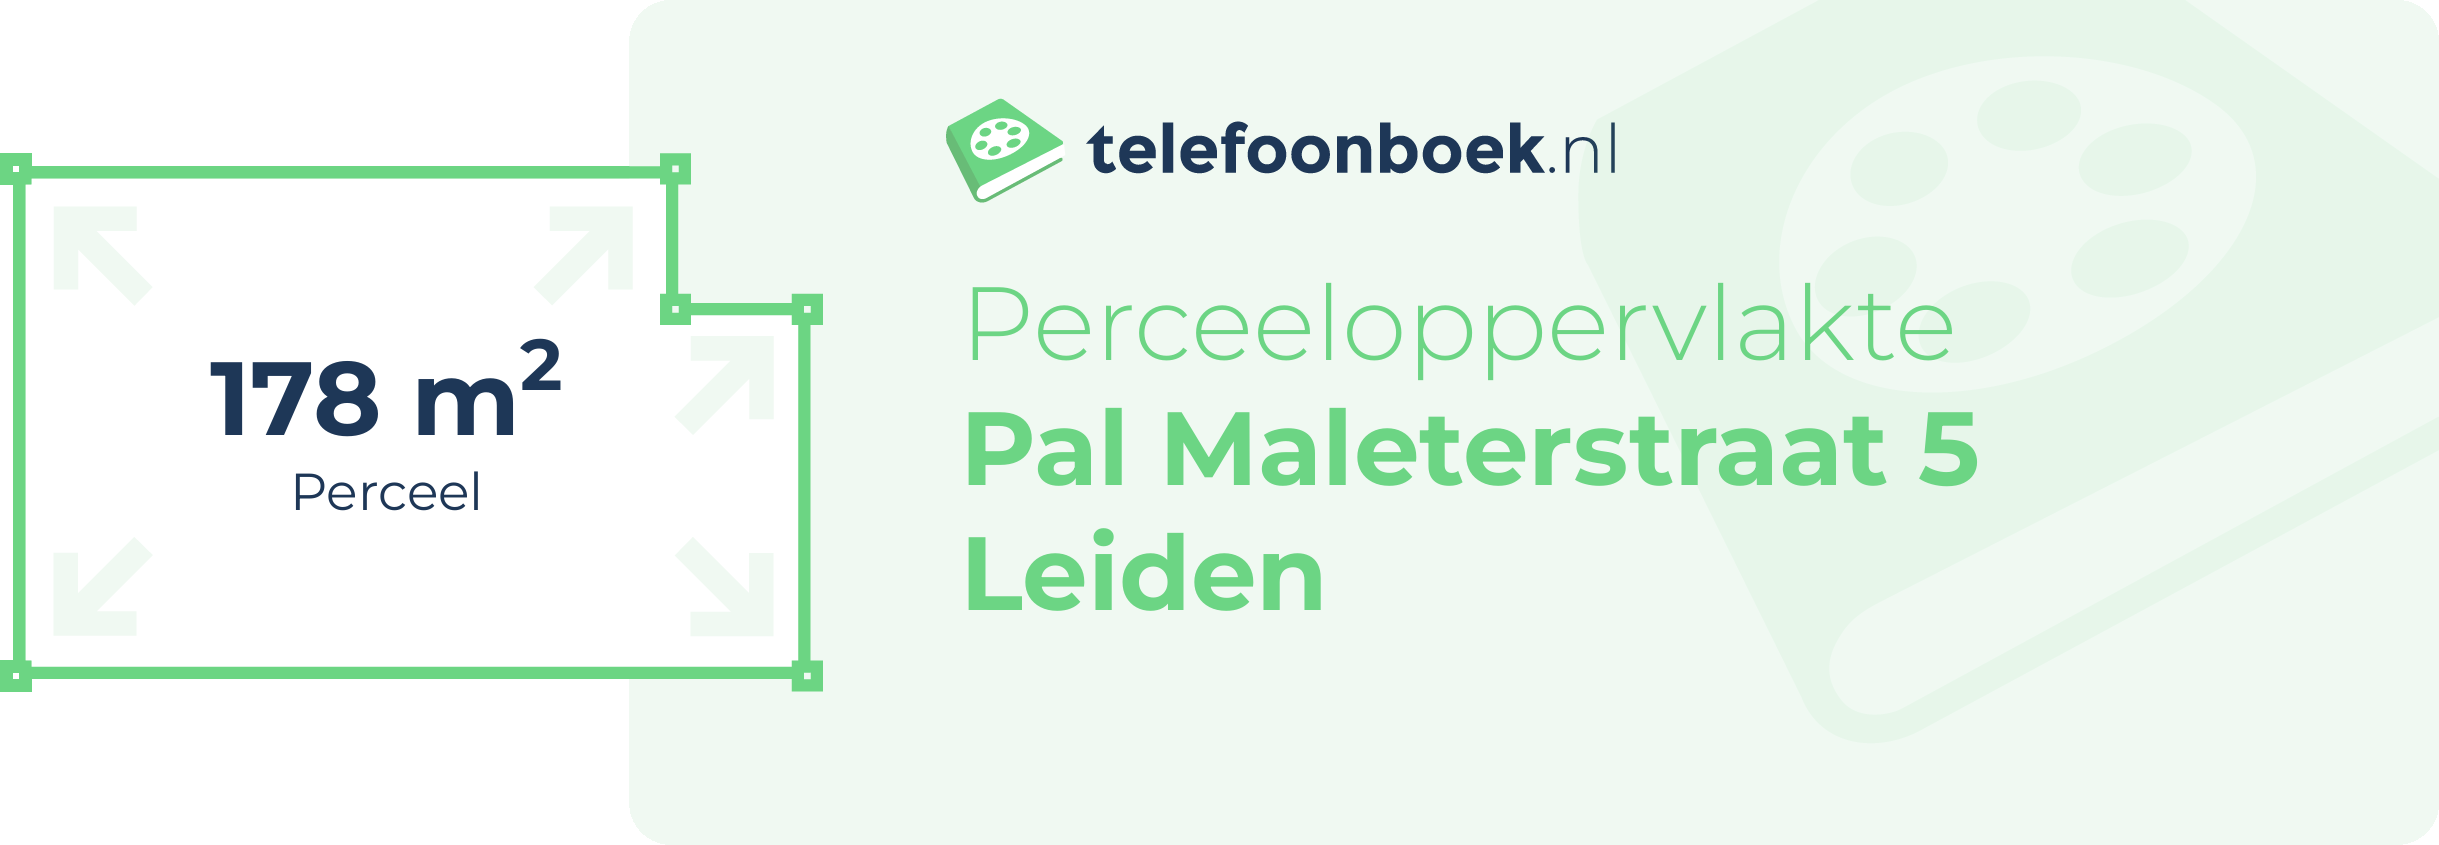 Perceeloppervlakte Pal Maleterstraat 5 Leiden